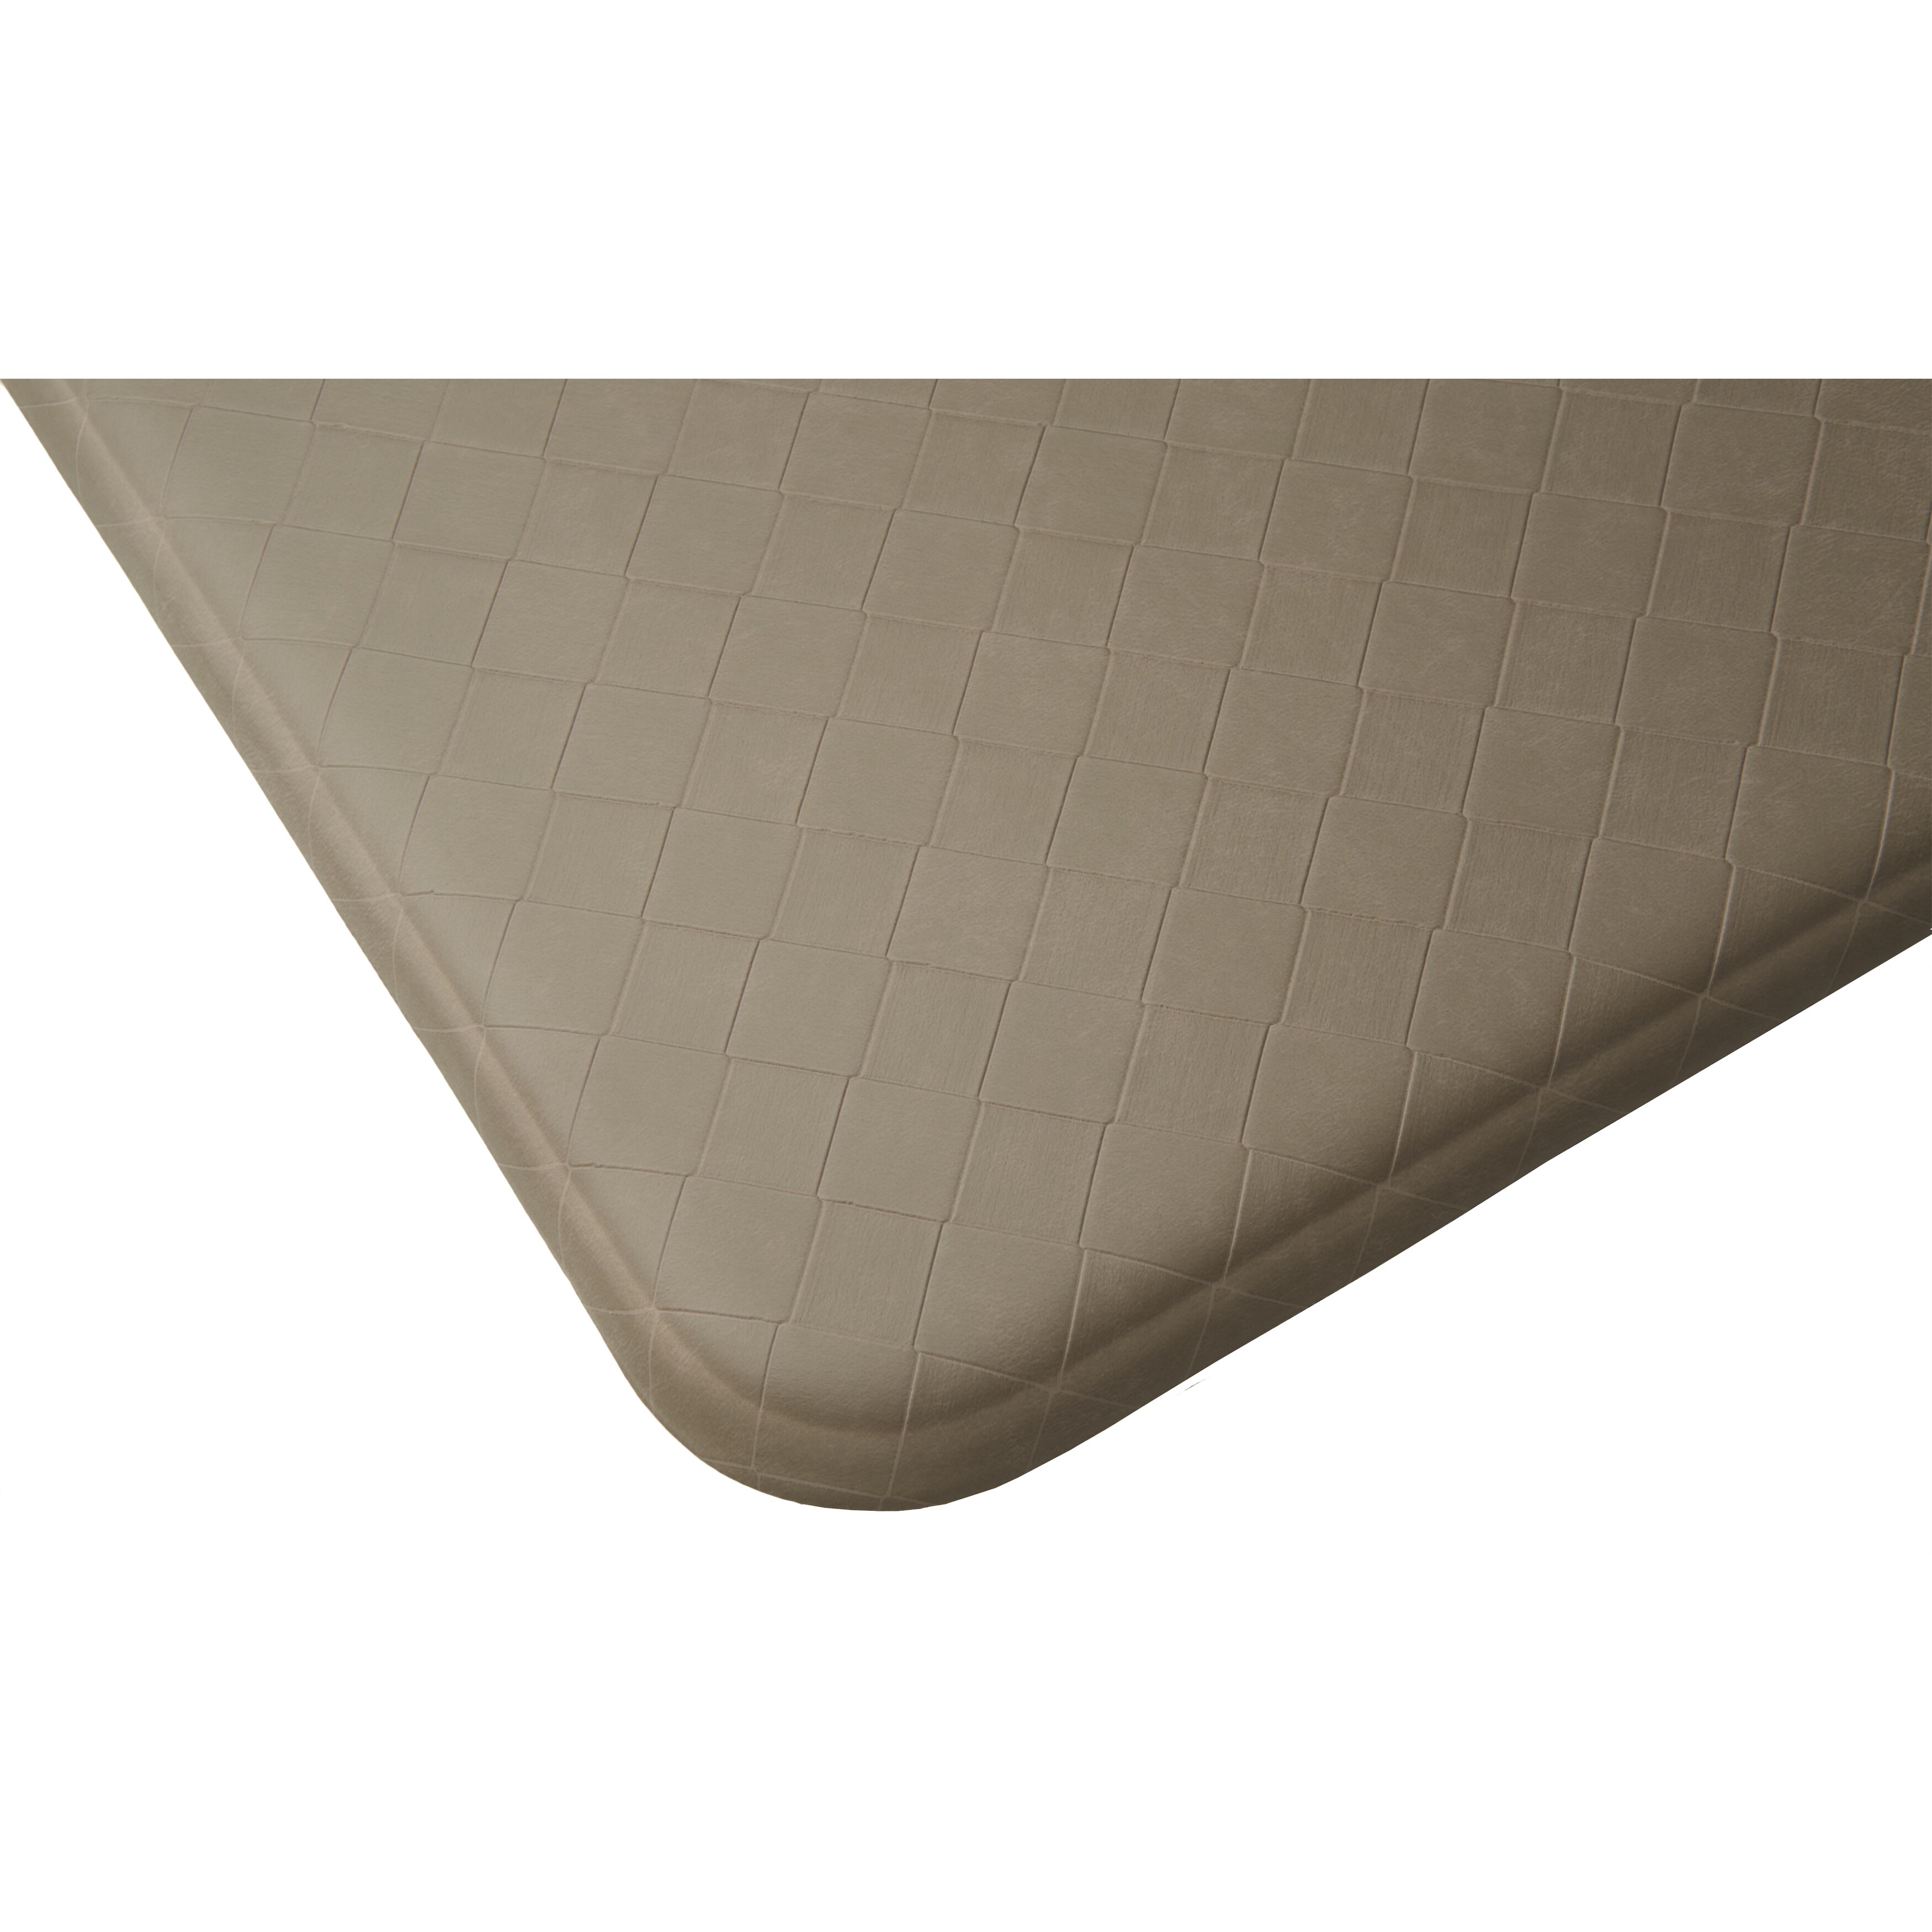 Imprint Nantucket Anti-fatigue Comfort Mat - 2'2 x 4' - Bed Bath & Beyond -  6187409